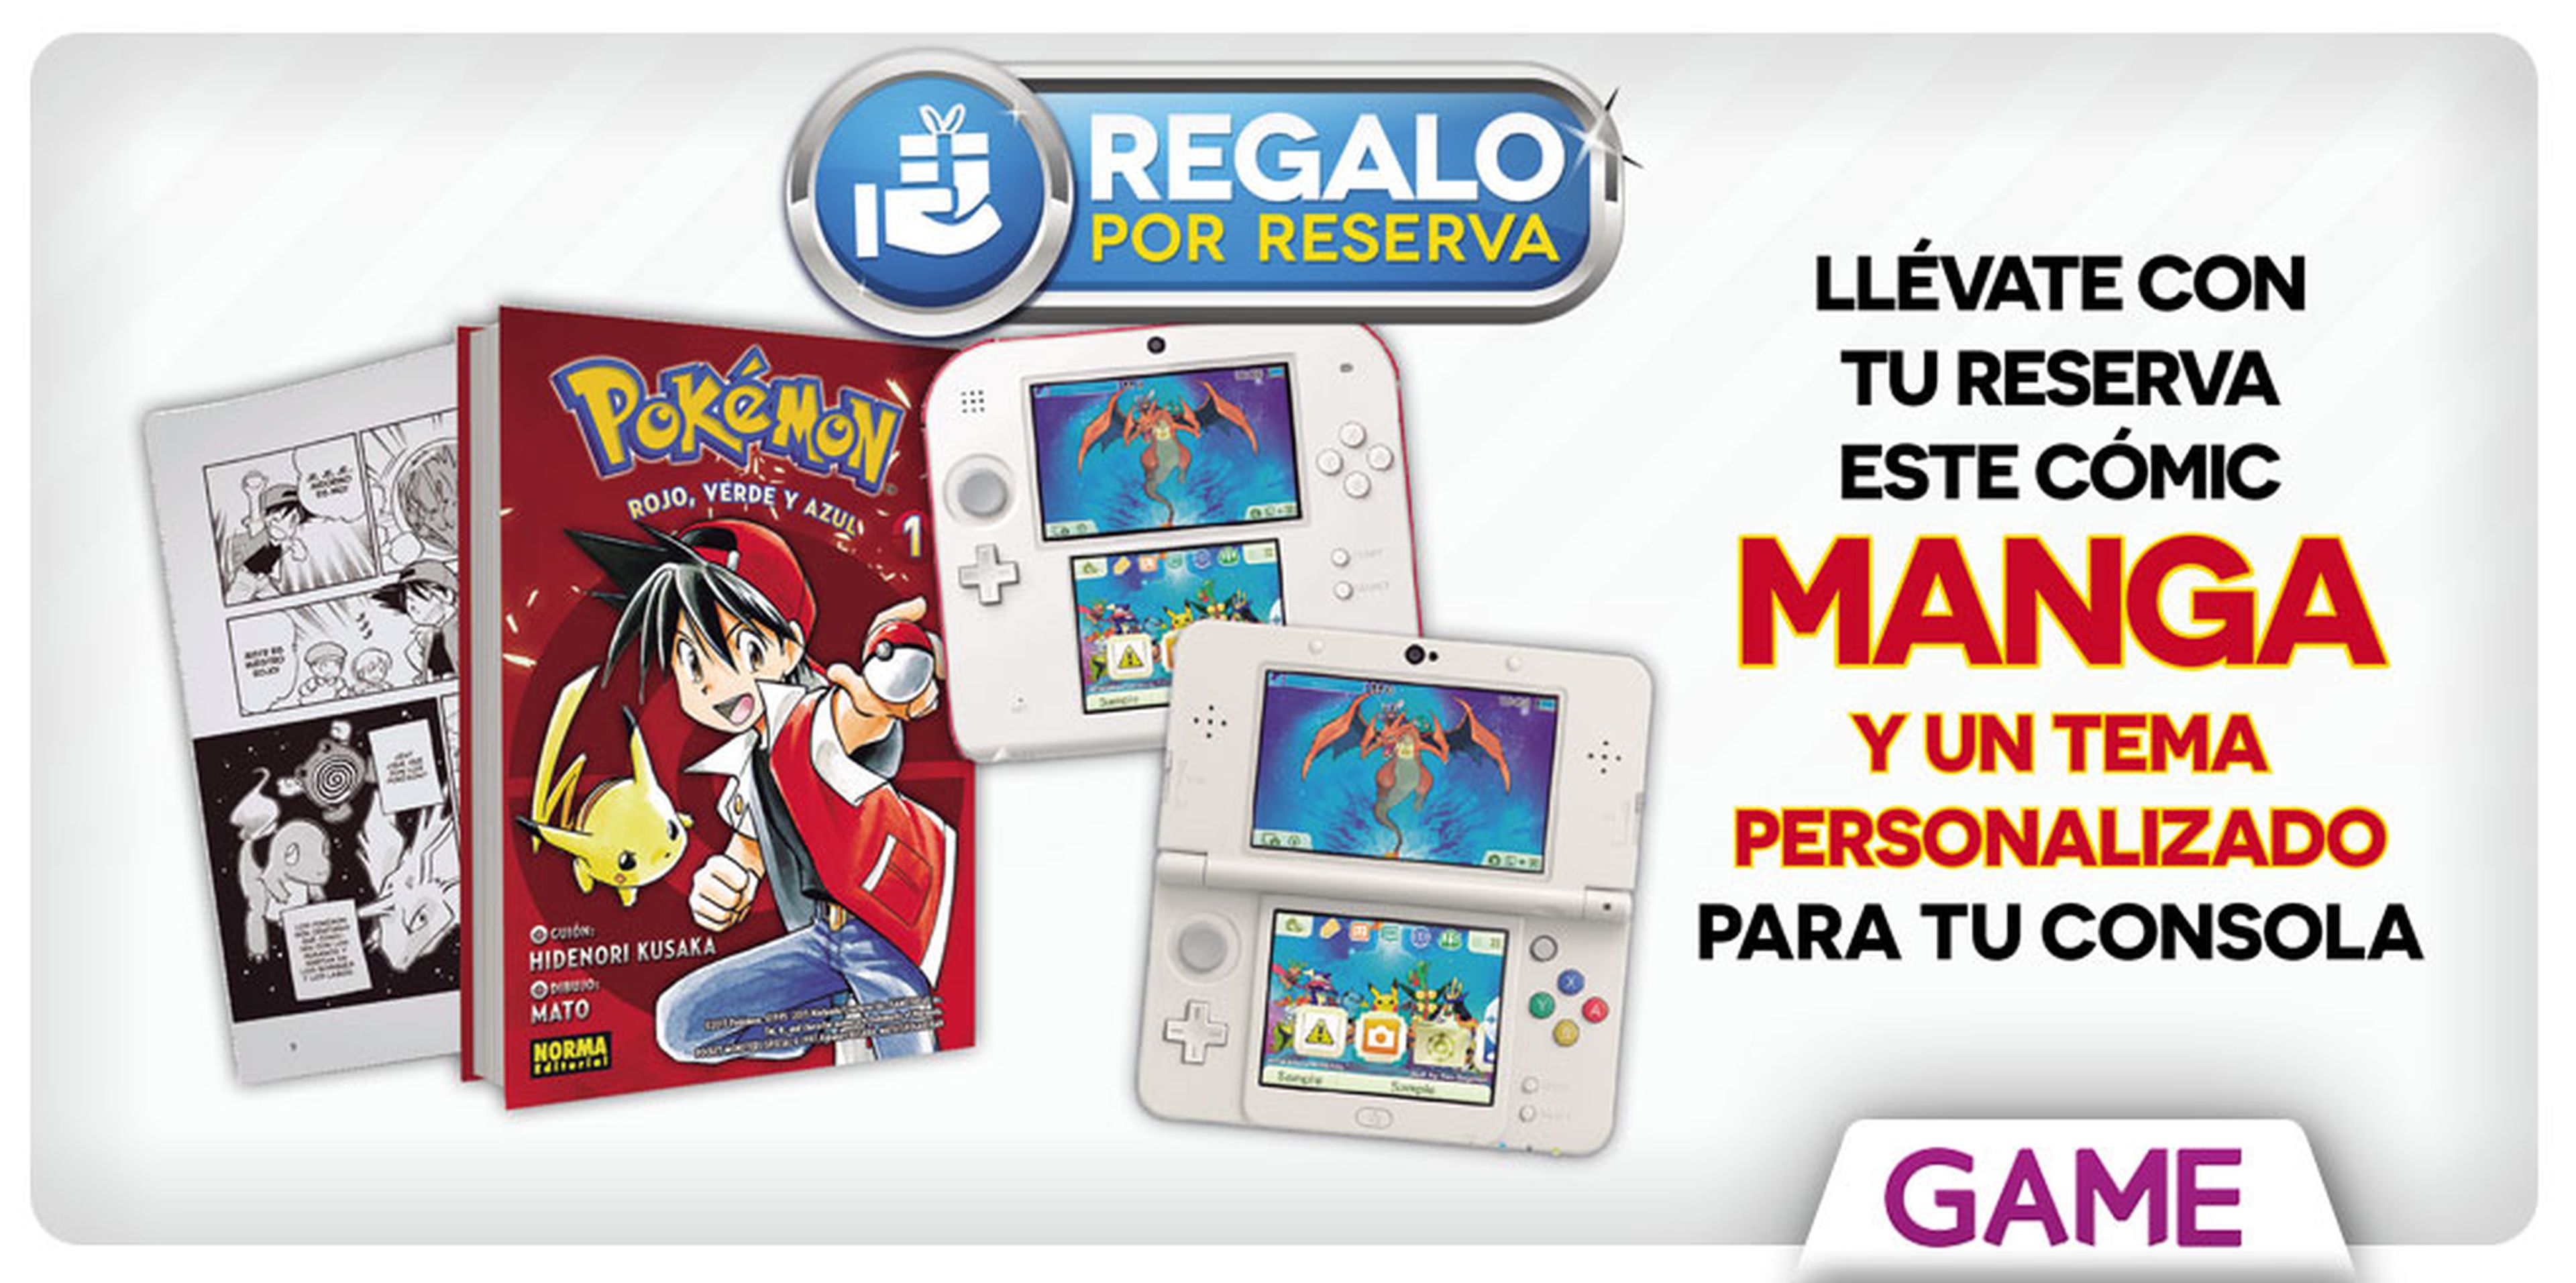 Pokémon Mundo Megamisterioso - Regalo de reserva en GAME